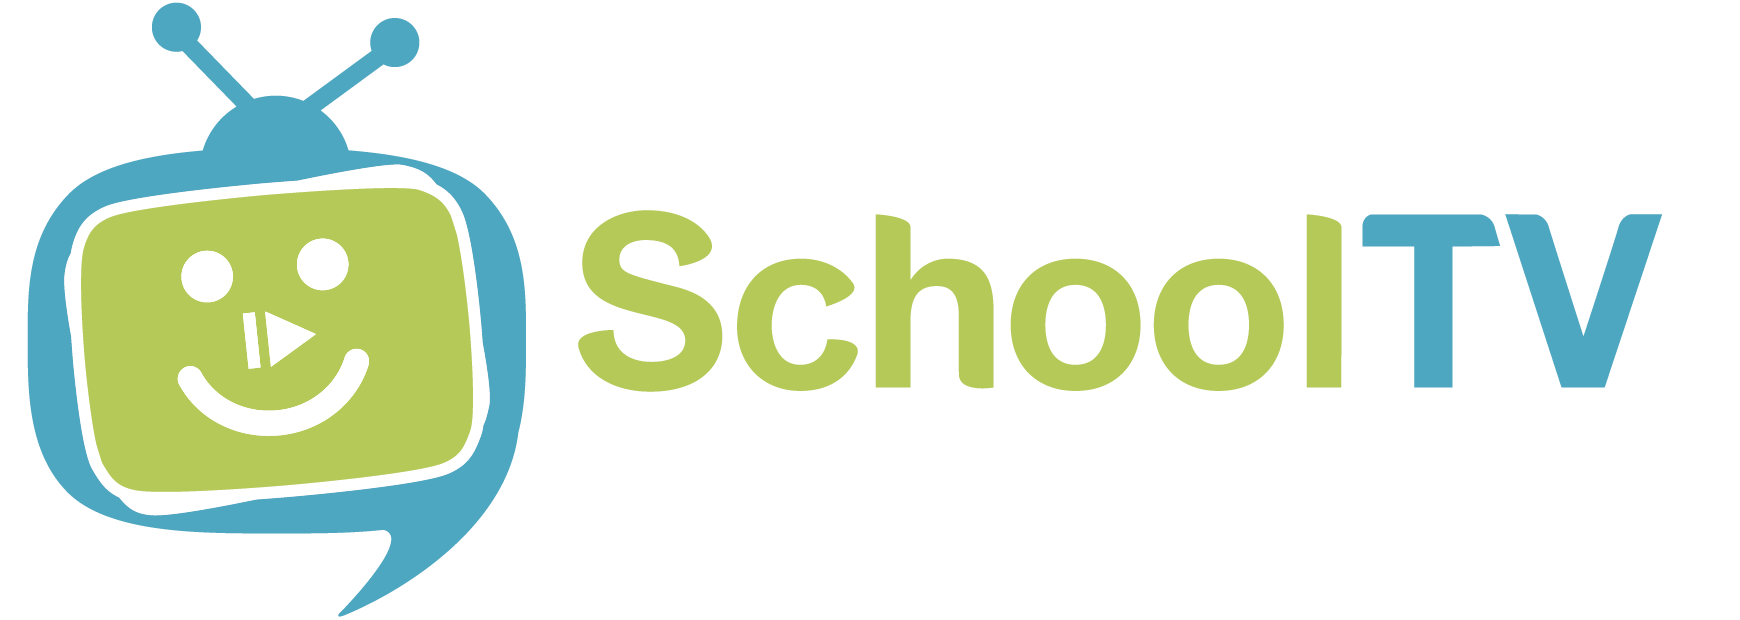 logo.schooltv